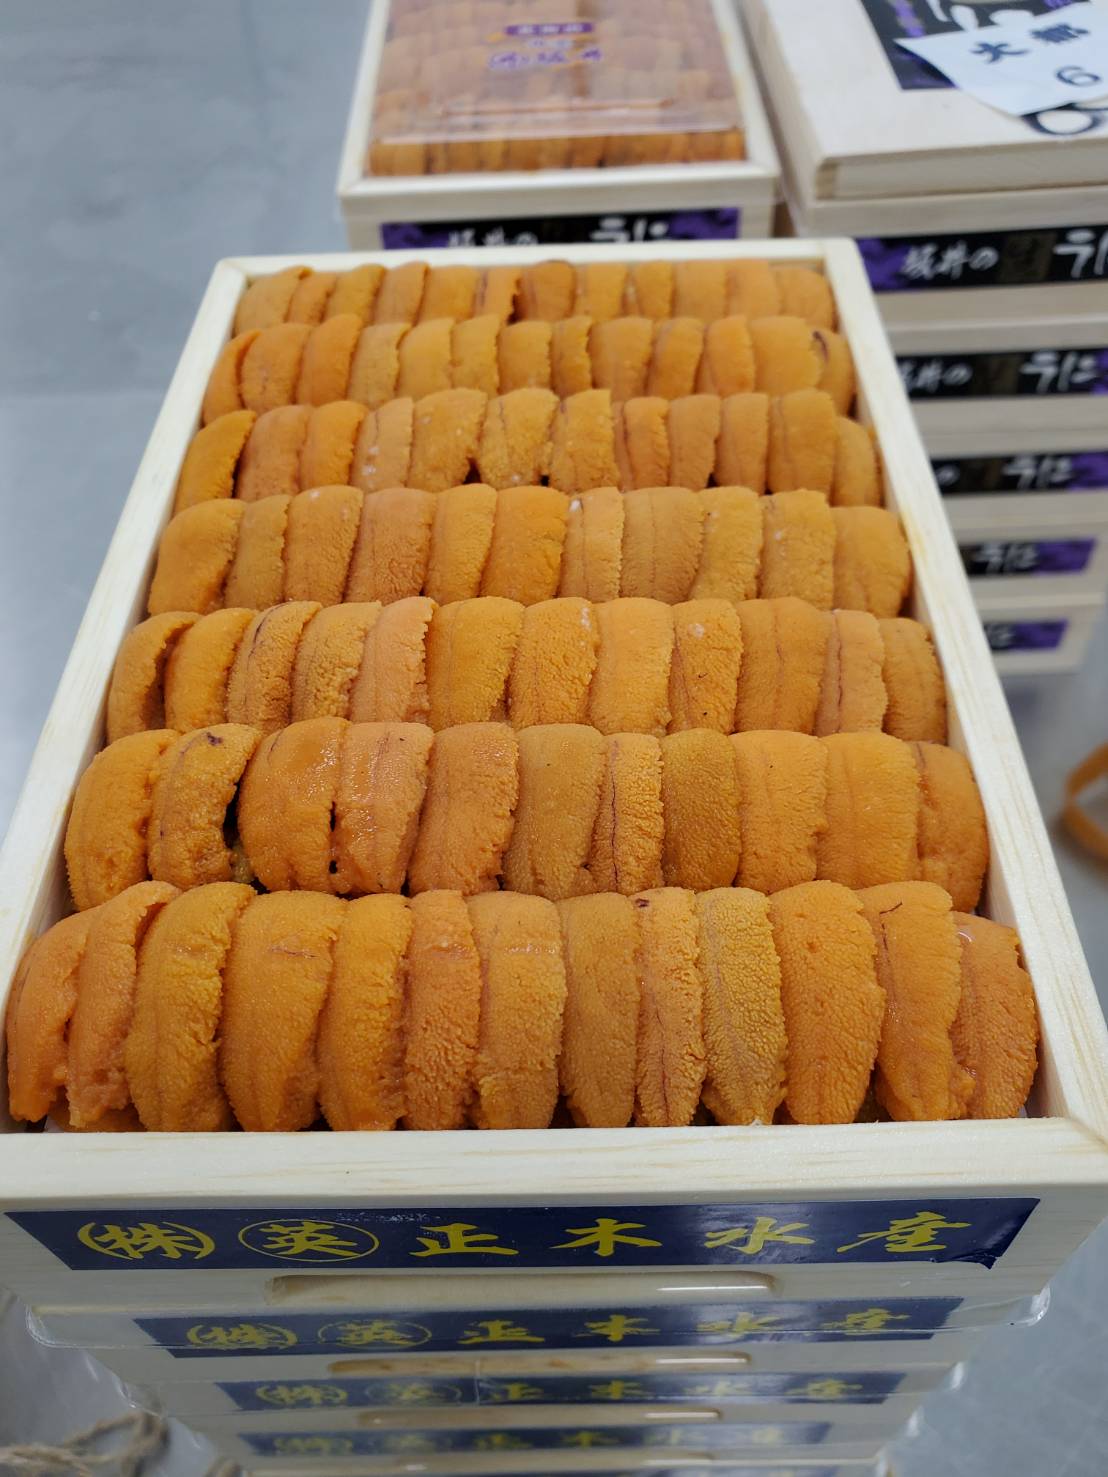 Uni Red Sea Urchin Med Premium from Hokkaido250g box 豊洲直送!北海道産生うに